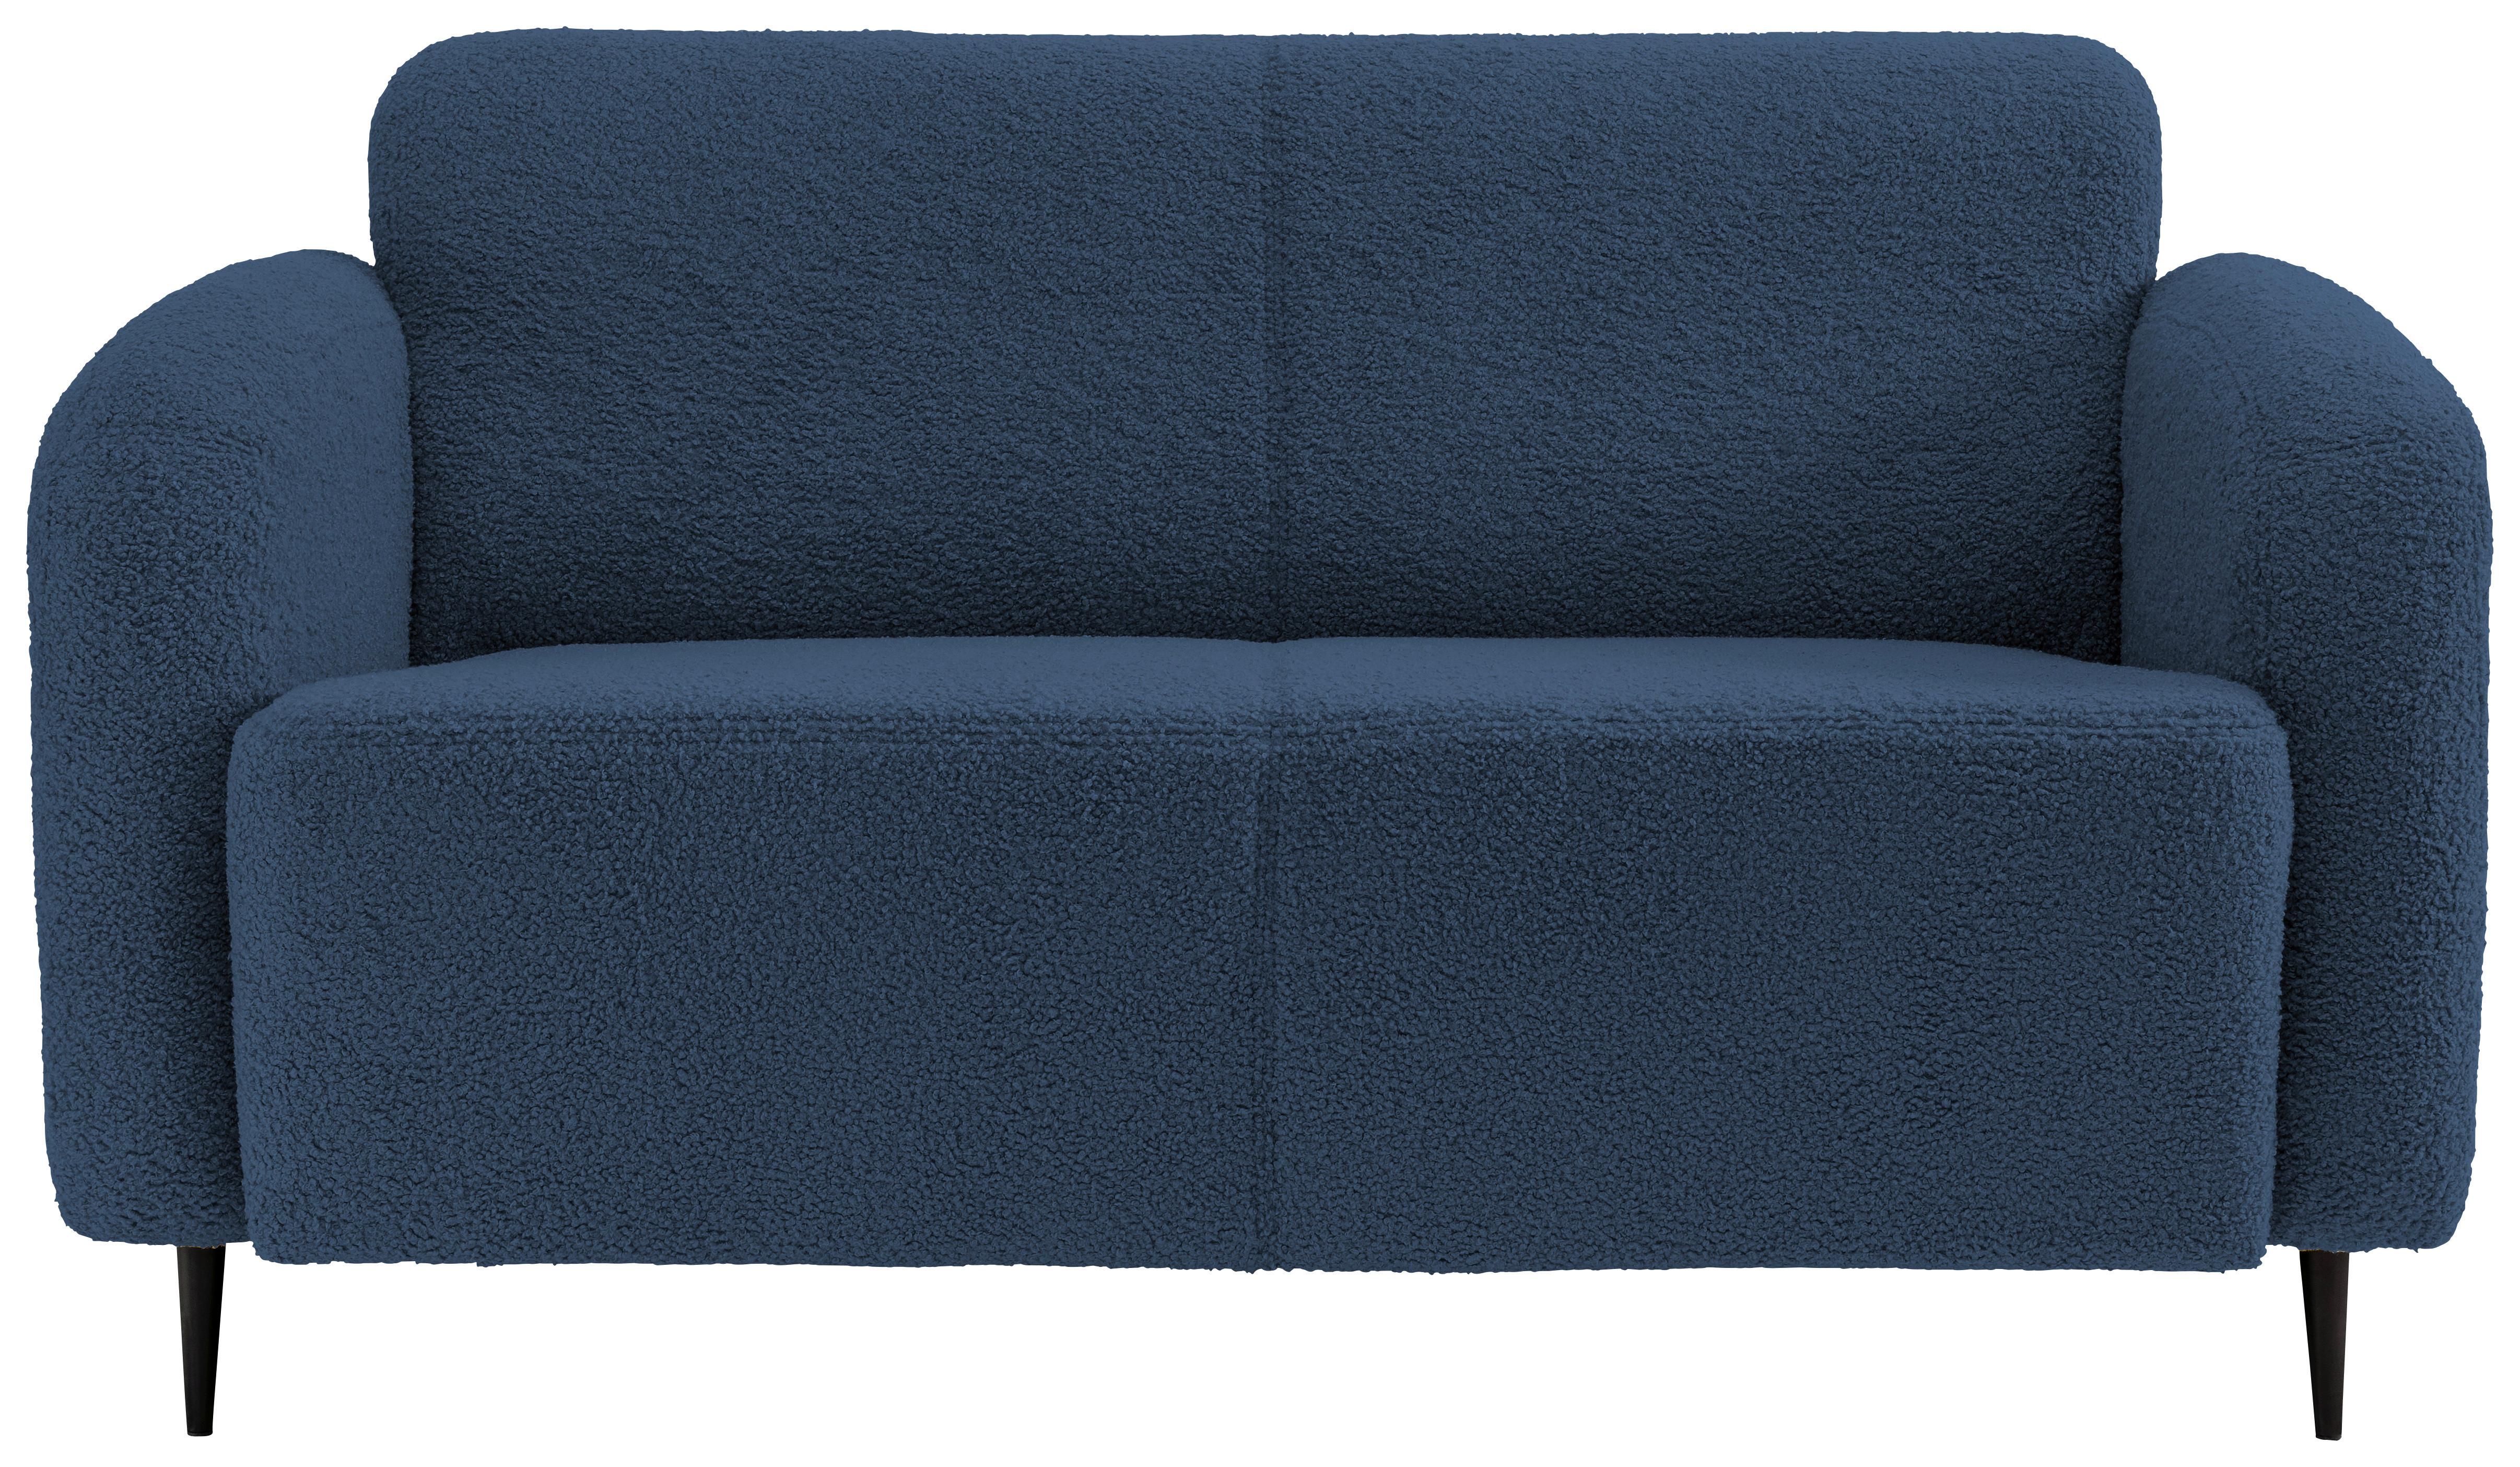 2-Sitzer-Sofa Marone Blau Teddystoff - Blau/Schwarz, MODERN, Textil/Metall (140/76/90cm) - Livetastic